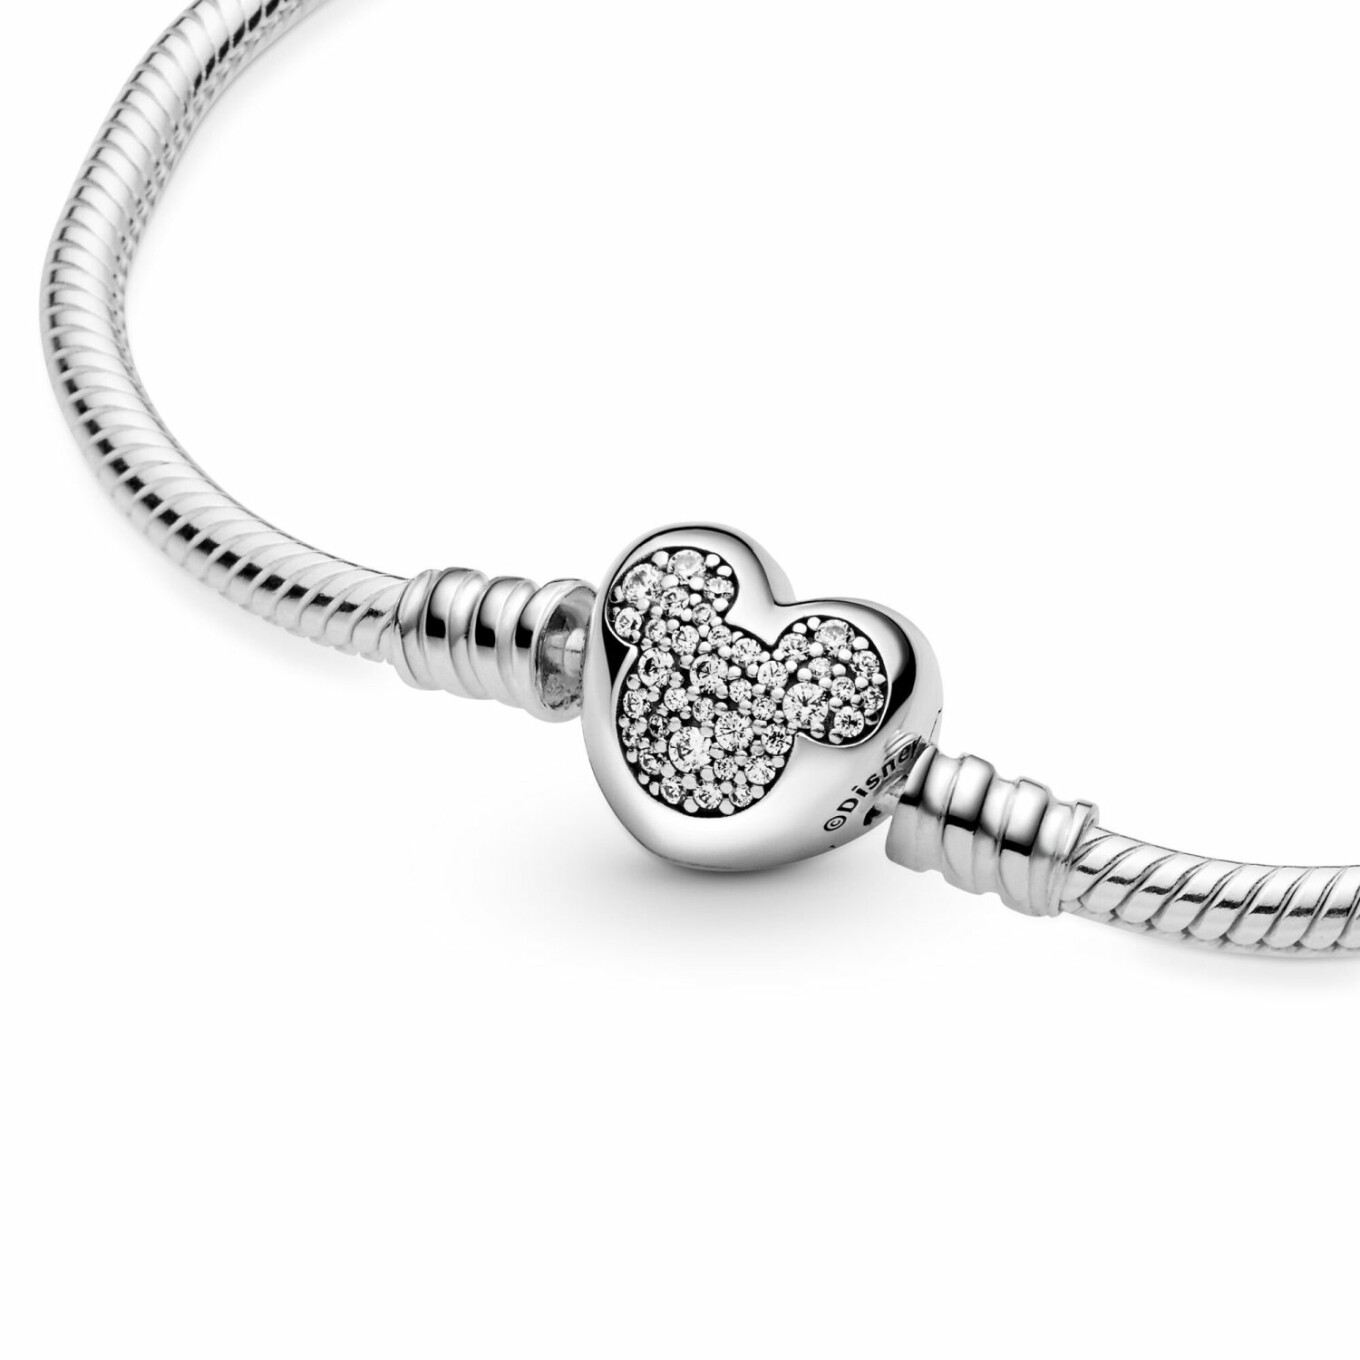 Bracelet Disney X Pandora maille serpent fermoir cœur disney mickey moments en argent et oxyde de zirconium, 19 cm